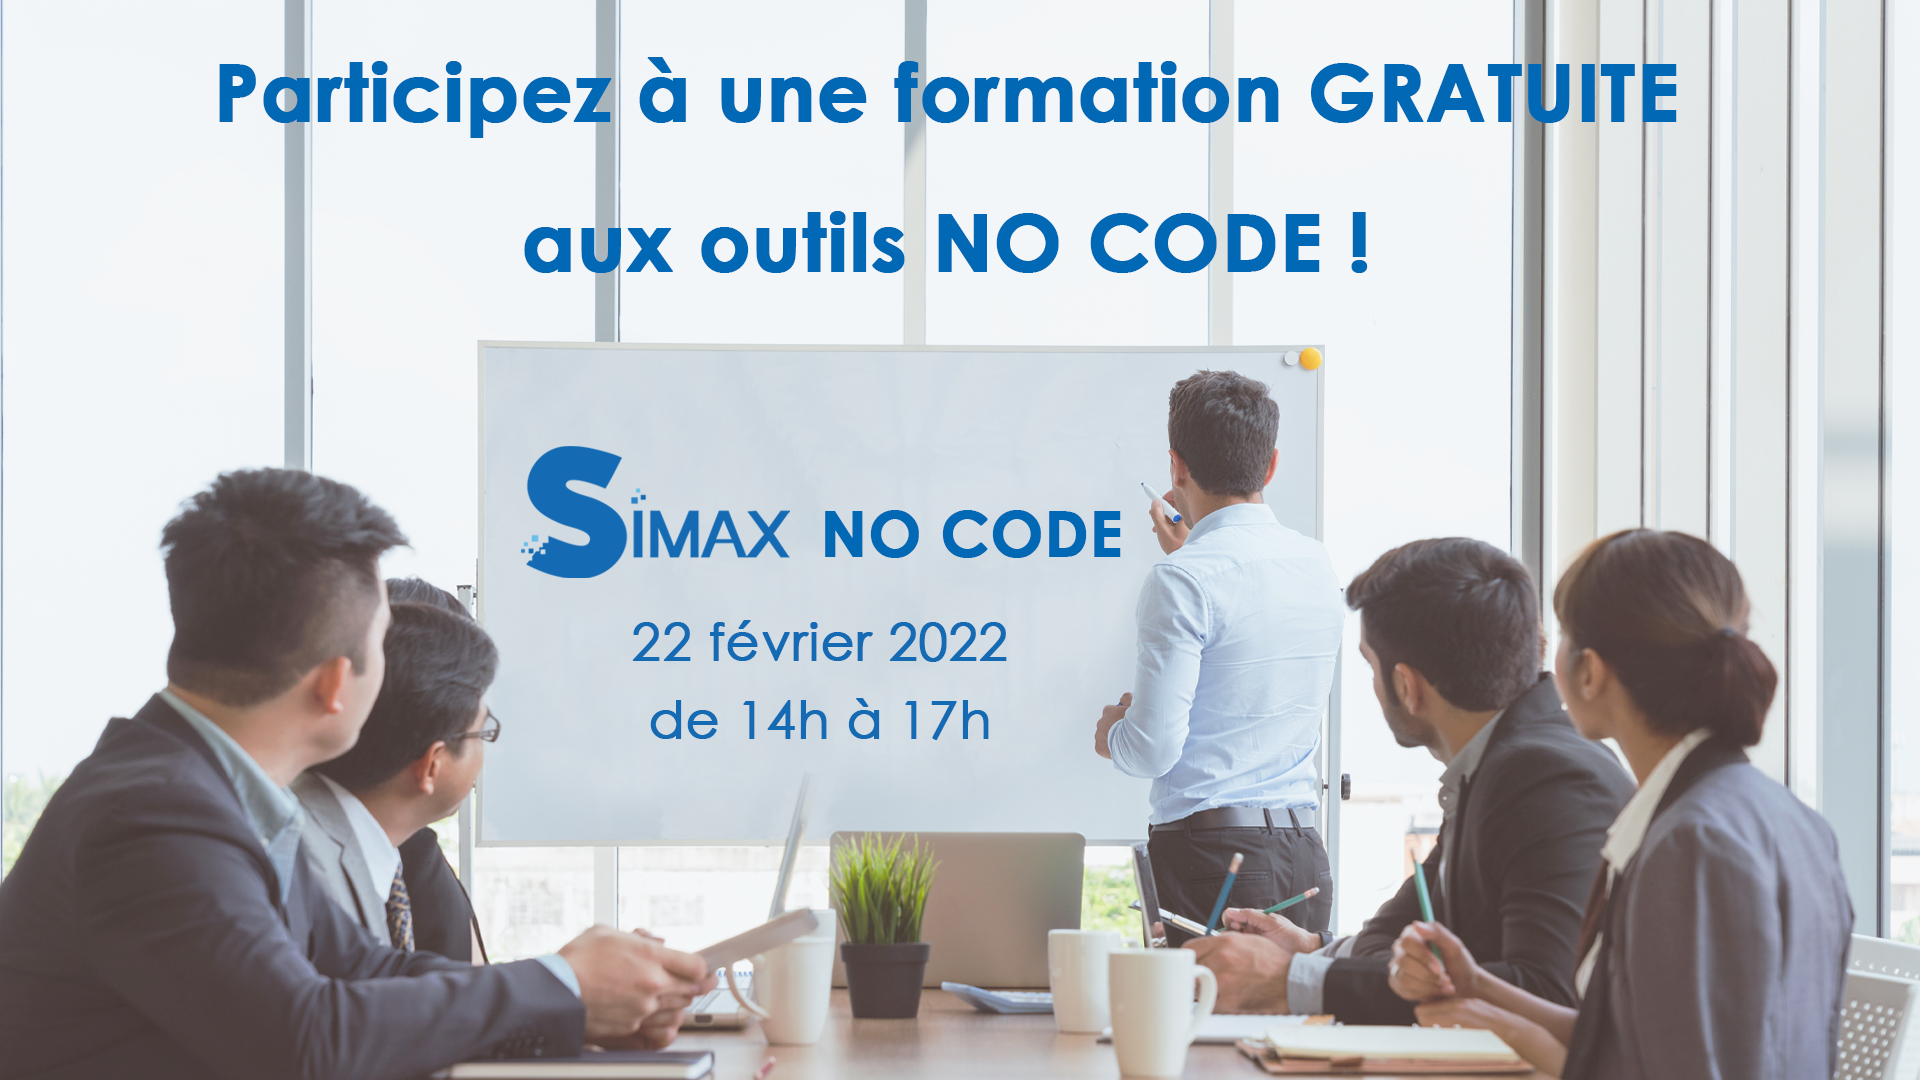 Formation aux outils No Code gratuite avec SIMAX !